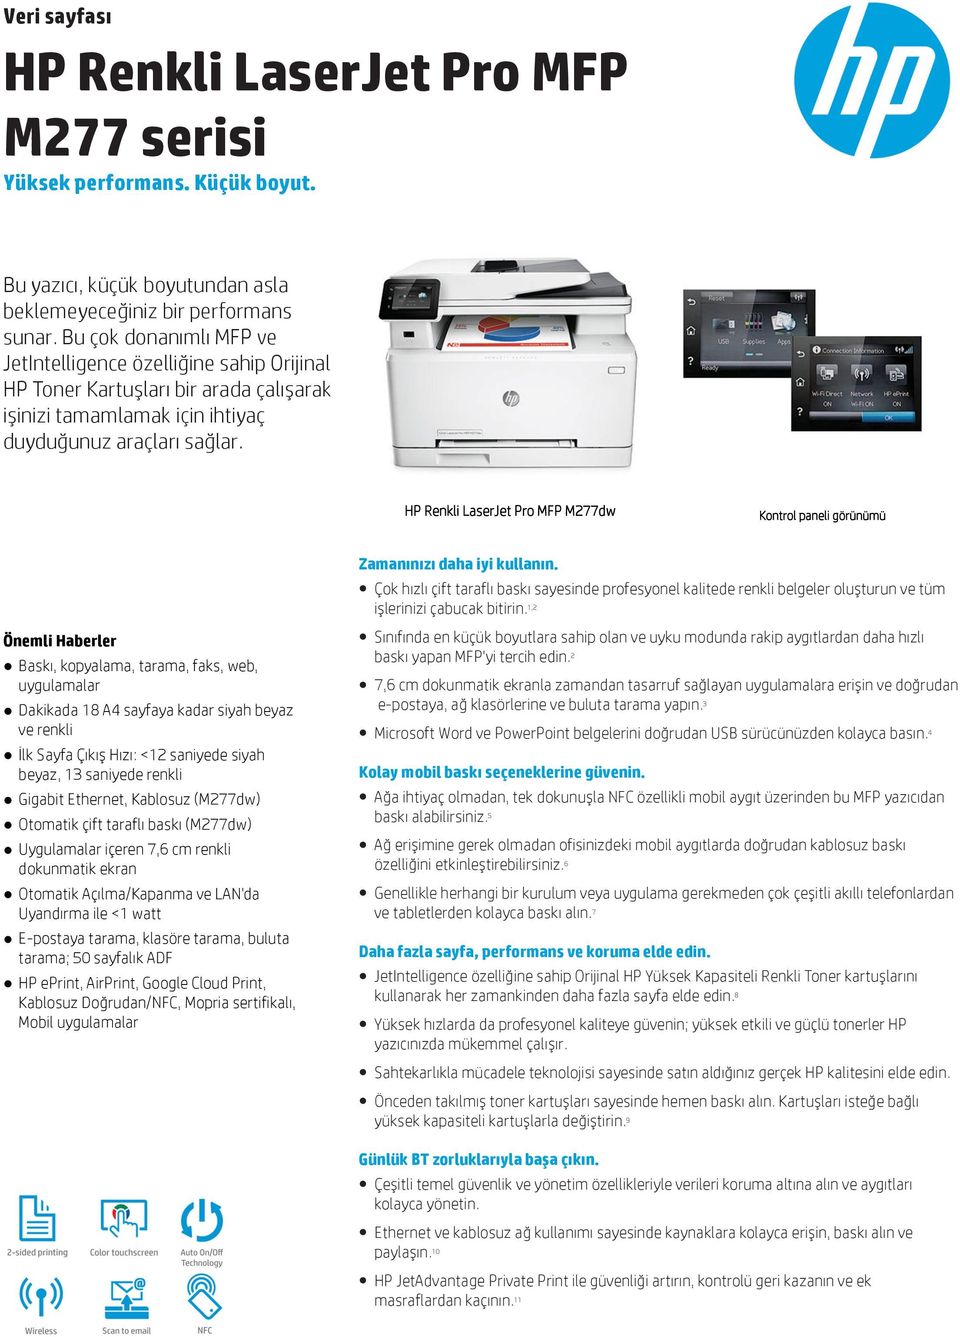 HP Renkli LaserJet Pro MFP M277dw Kontrol paneli görünümü Önemli Haberler Baskı, kopyalama, tarama, faks, web, uygulamalar Dakikada 18 A4 sayfaya kadar siyah beyaz ve renkli İlk Sayfa Çıkış Hızı: <12